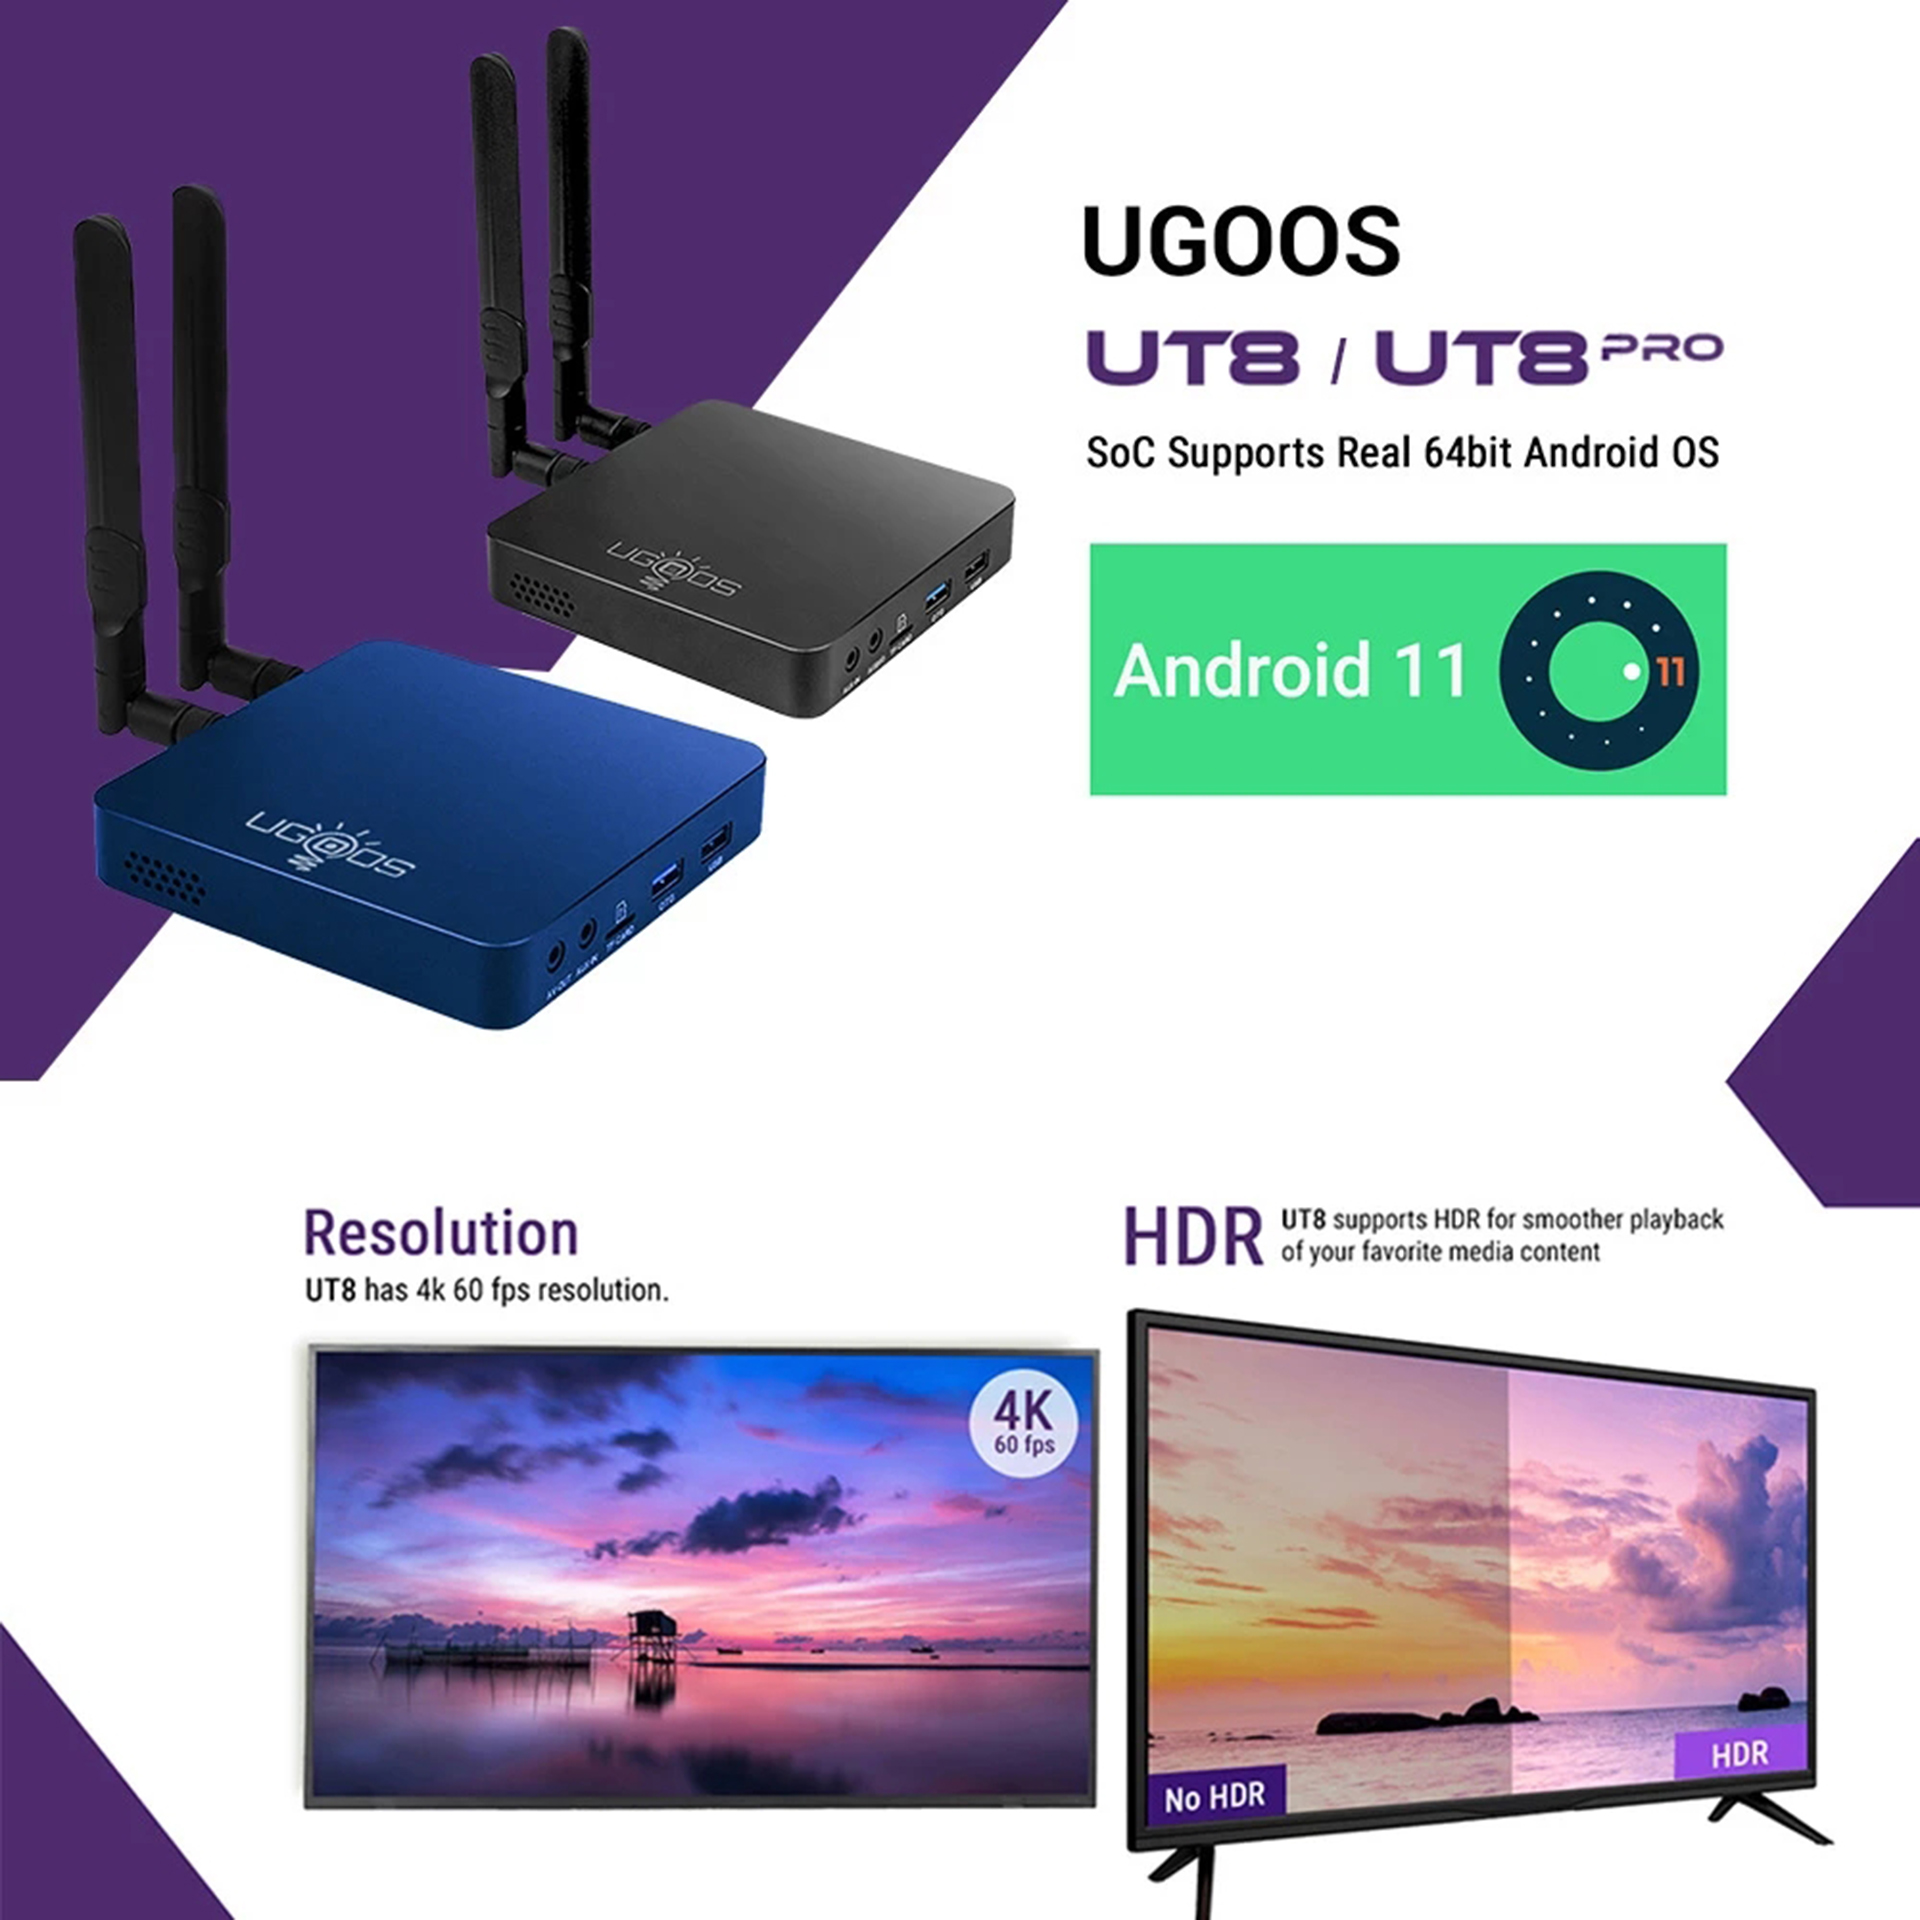 UGOOS-UT8-Pro-Rockchip-RK3568-DDR4-8GB-64GB-eMMC-Android-11-WIFI-6-1000M-LAN-4K60fps-HDR10-BT-50-Sma-1930487-3